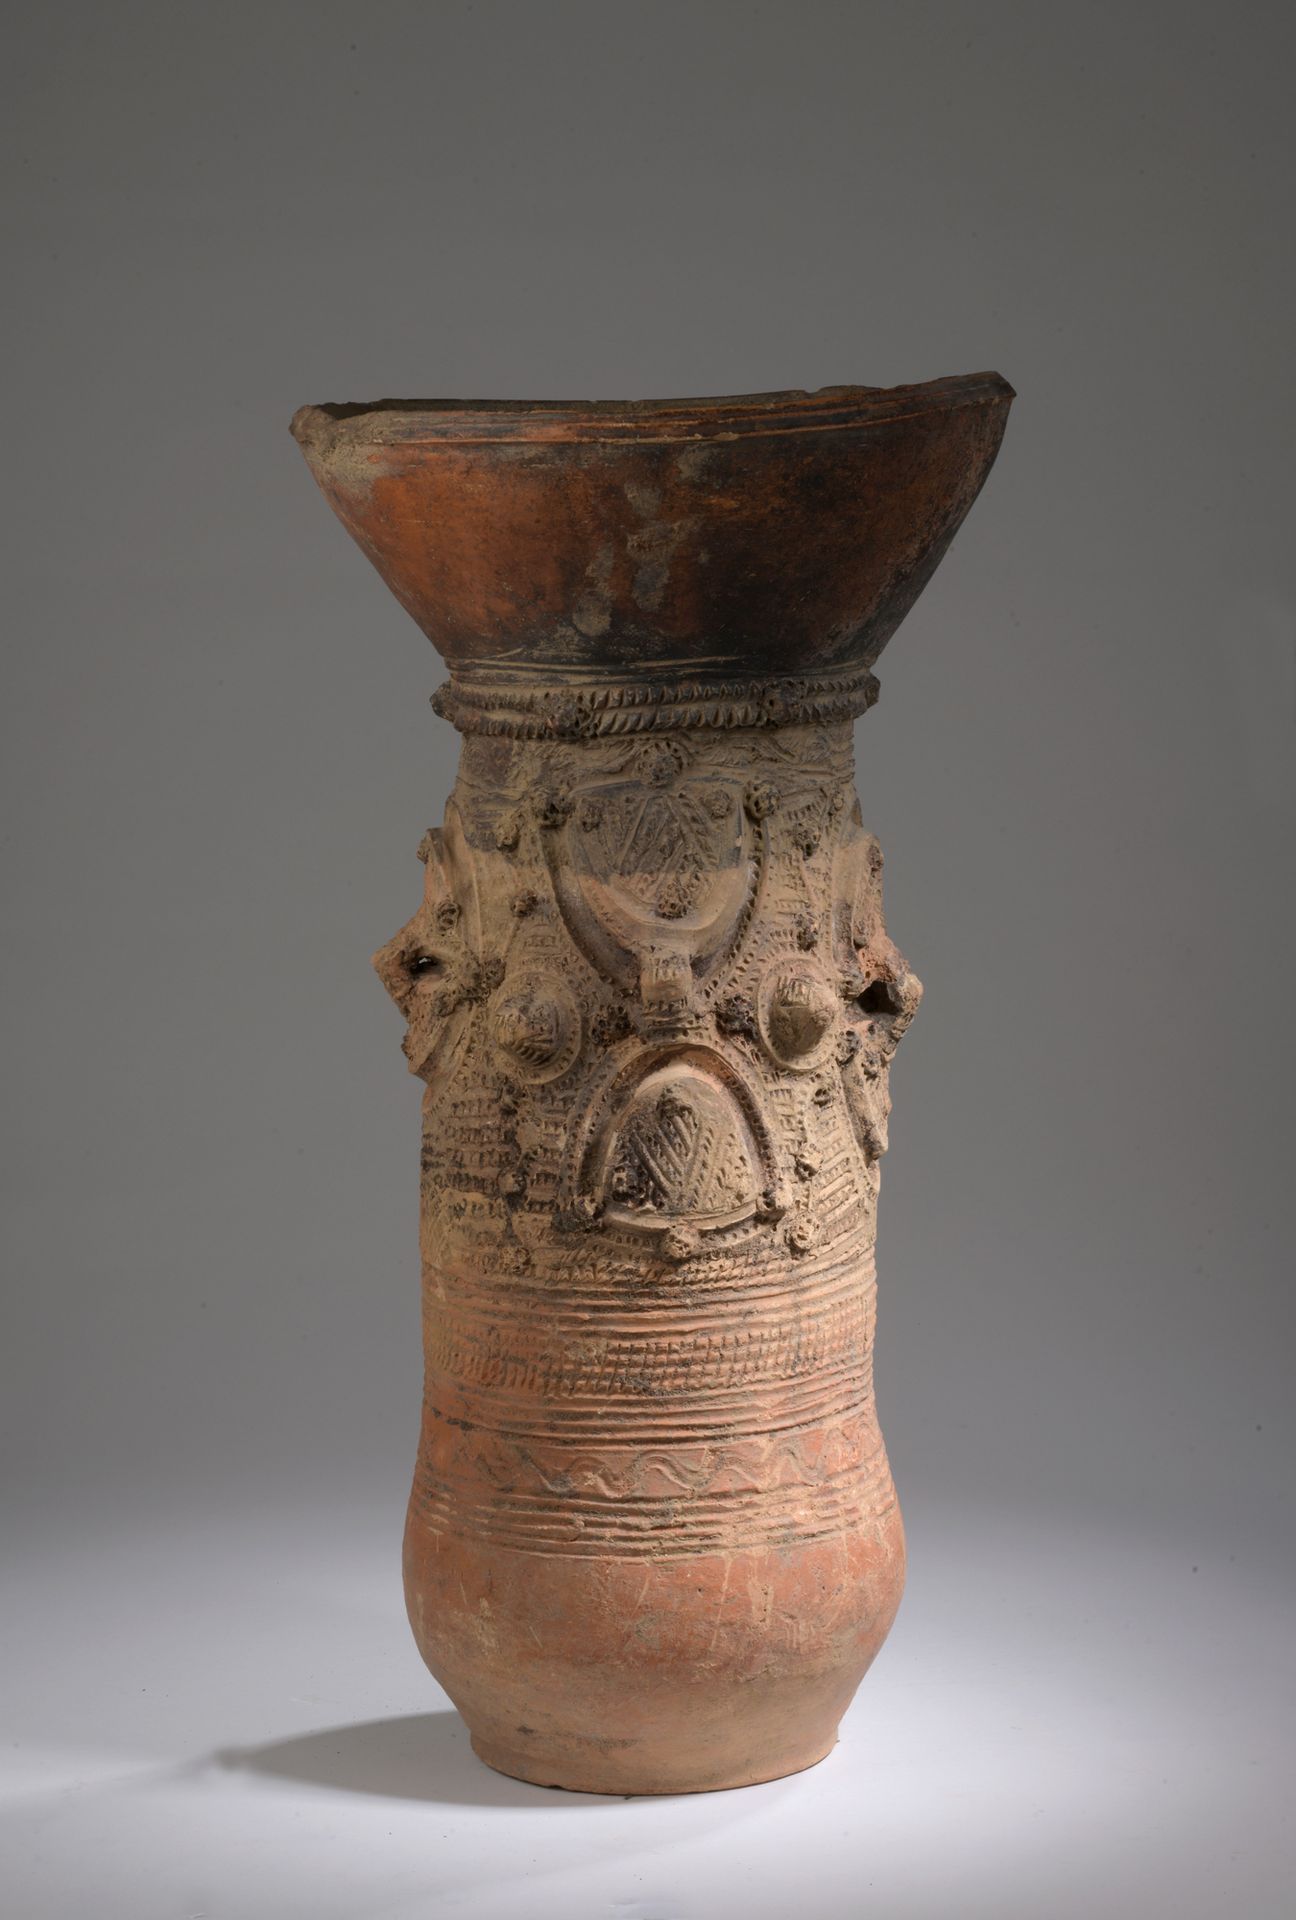 Null ETSO NUPE储物罐, 尼日利亚

陶器与赭石和红赭石滑石

H.60 D. 31 cm

喇叭形的颈部套在一个圆柱形的轴上，上面有塑料的装饰。
&hellip;